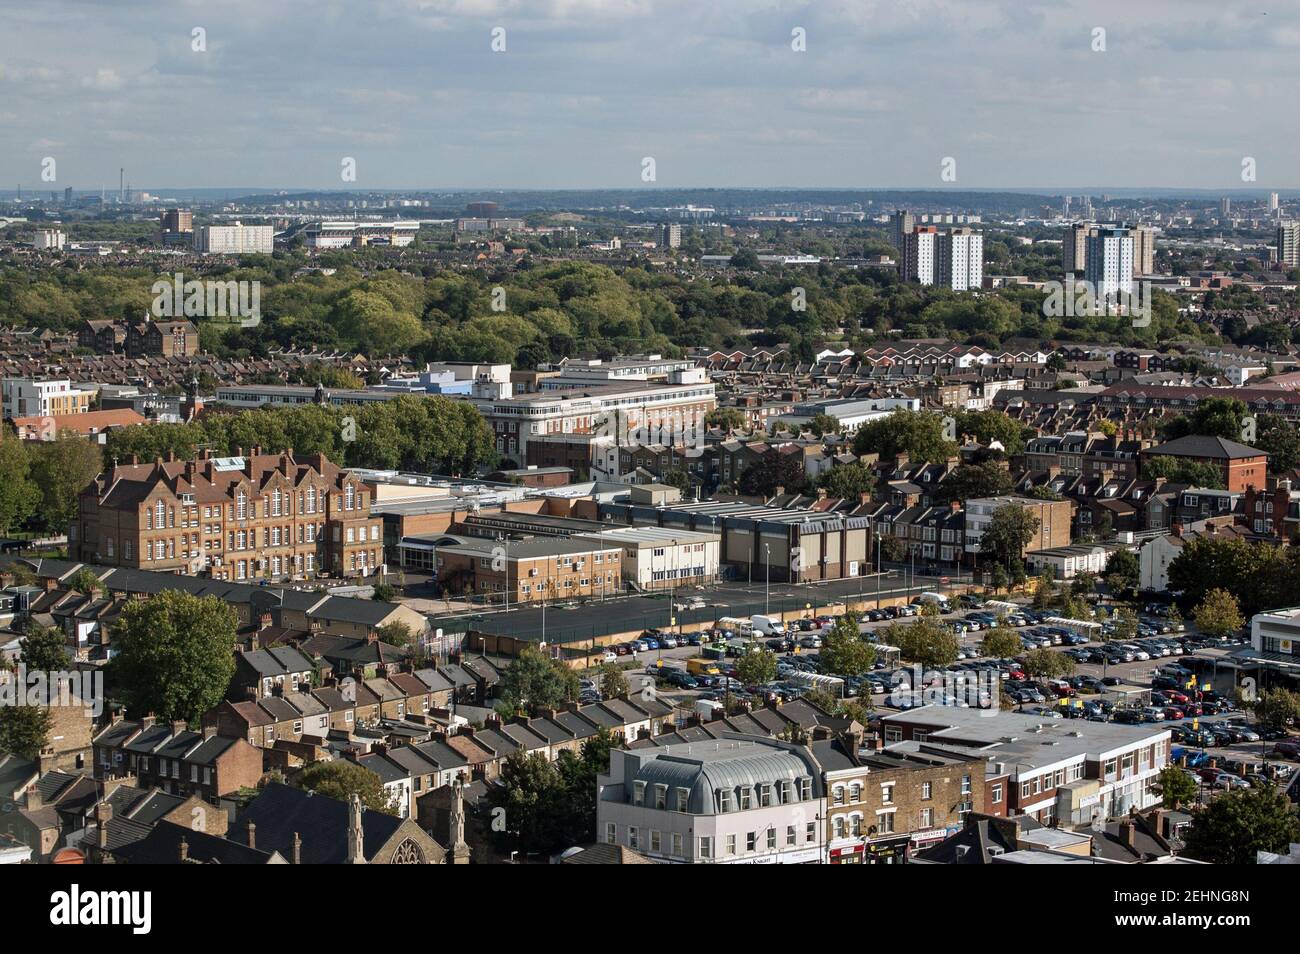 Vue depuis un grand bâtiment qui fait face au sud de Stratford, dans le quartier londonien de Newham, avec le campus de l'Université de l'est de Londres au milieu. Banque D'Images